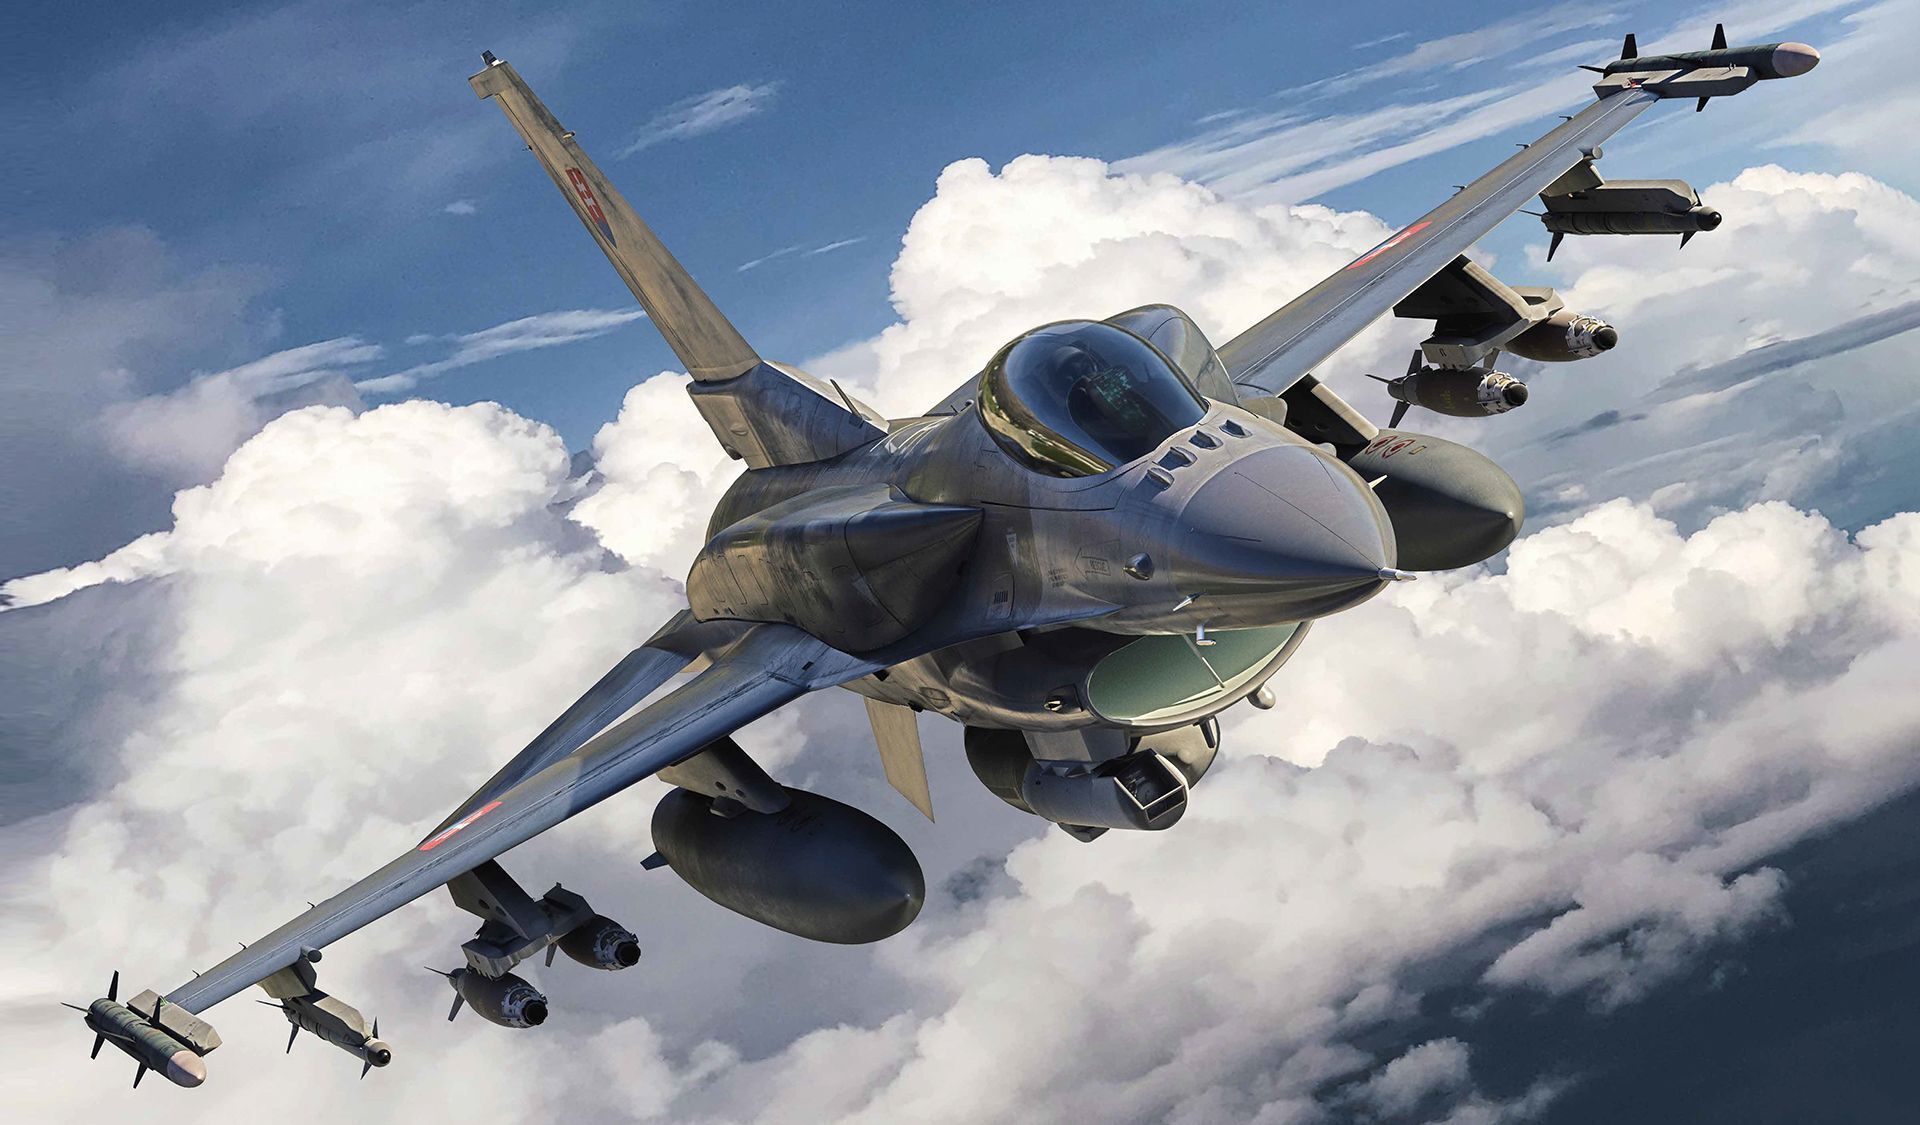 Багатофункціональний винищувач F-16 Fighting Falcon - випустили 4604 од., починаючи з 1975 року